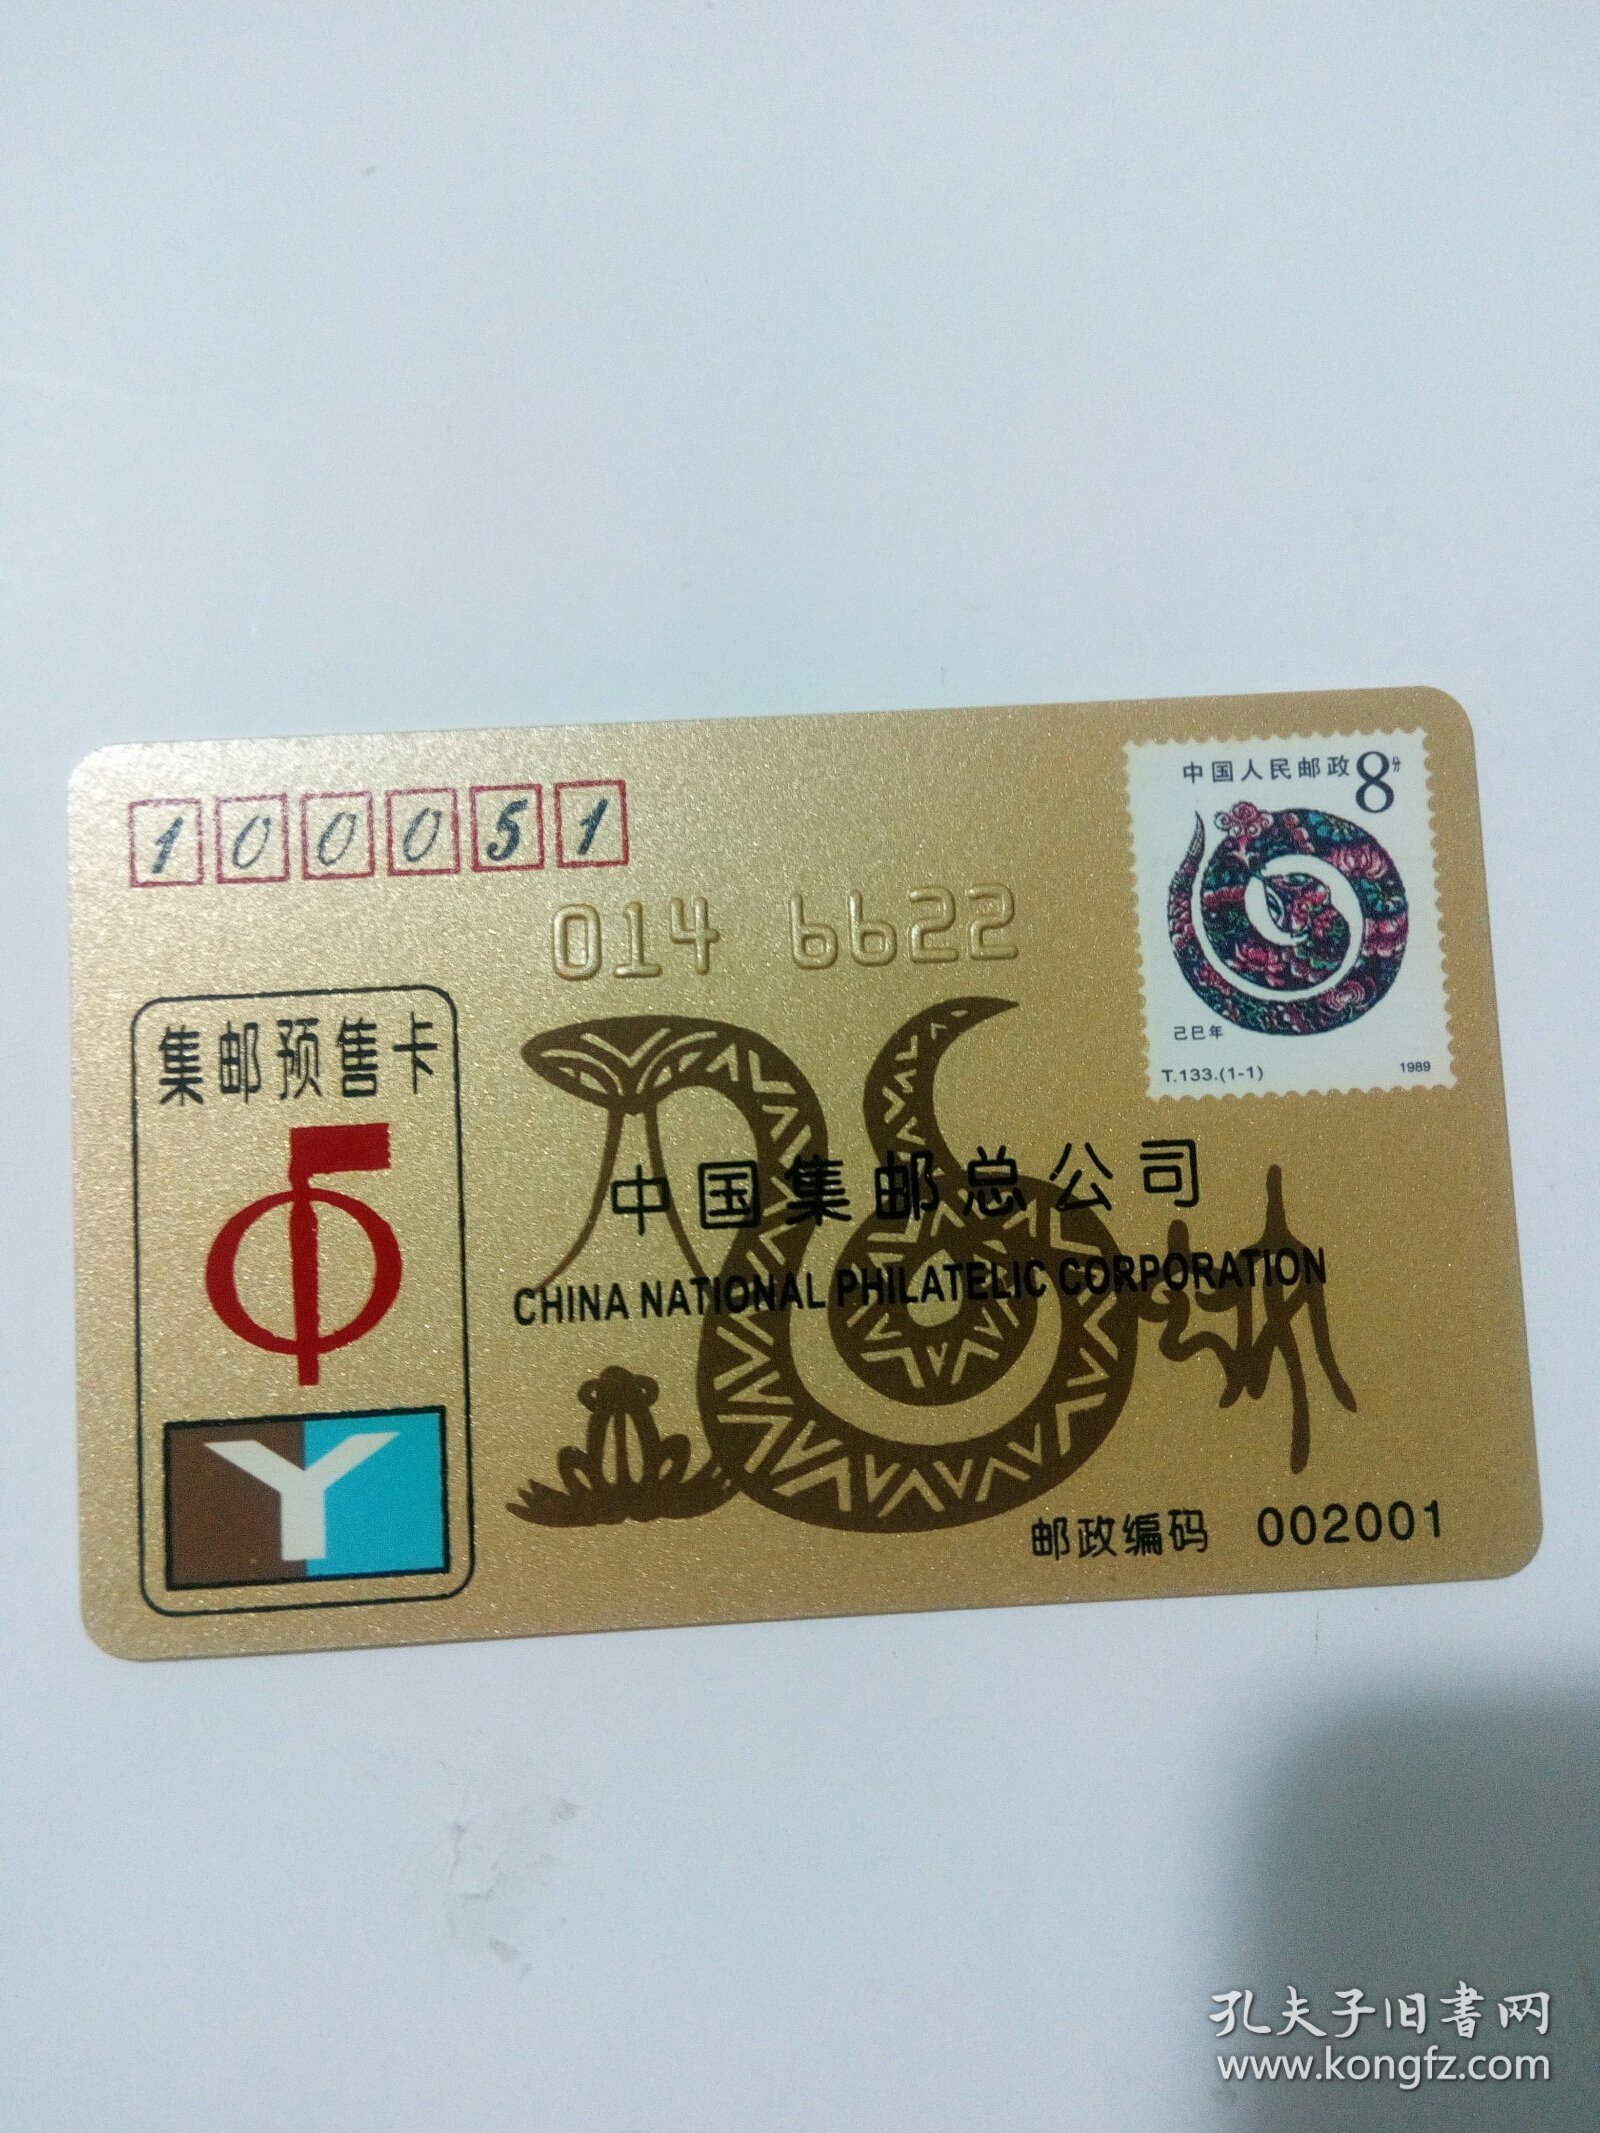 中国集邮总公司集邮预售卡金卡2001年（生肖蛇），用于收藏。